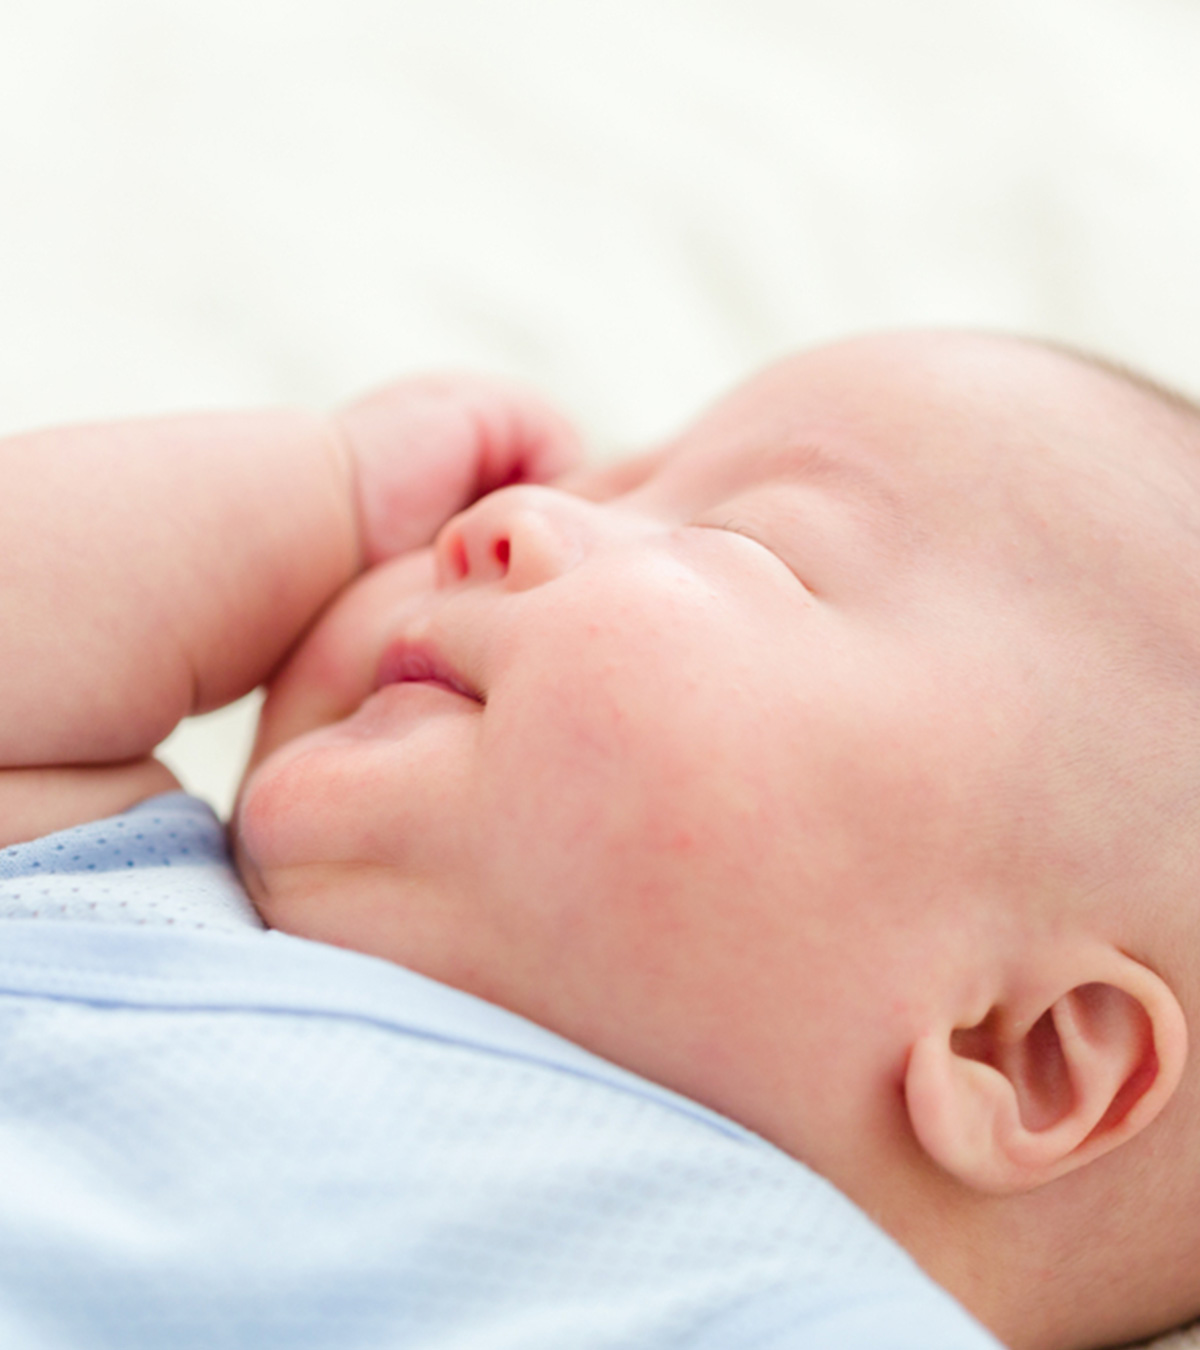 婴儿抓挠脸:为什么会发生以及如何预防